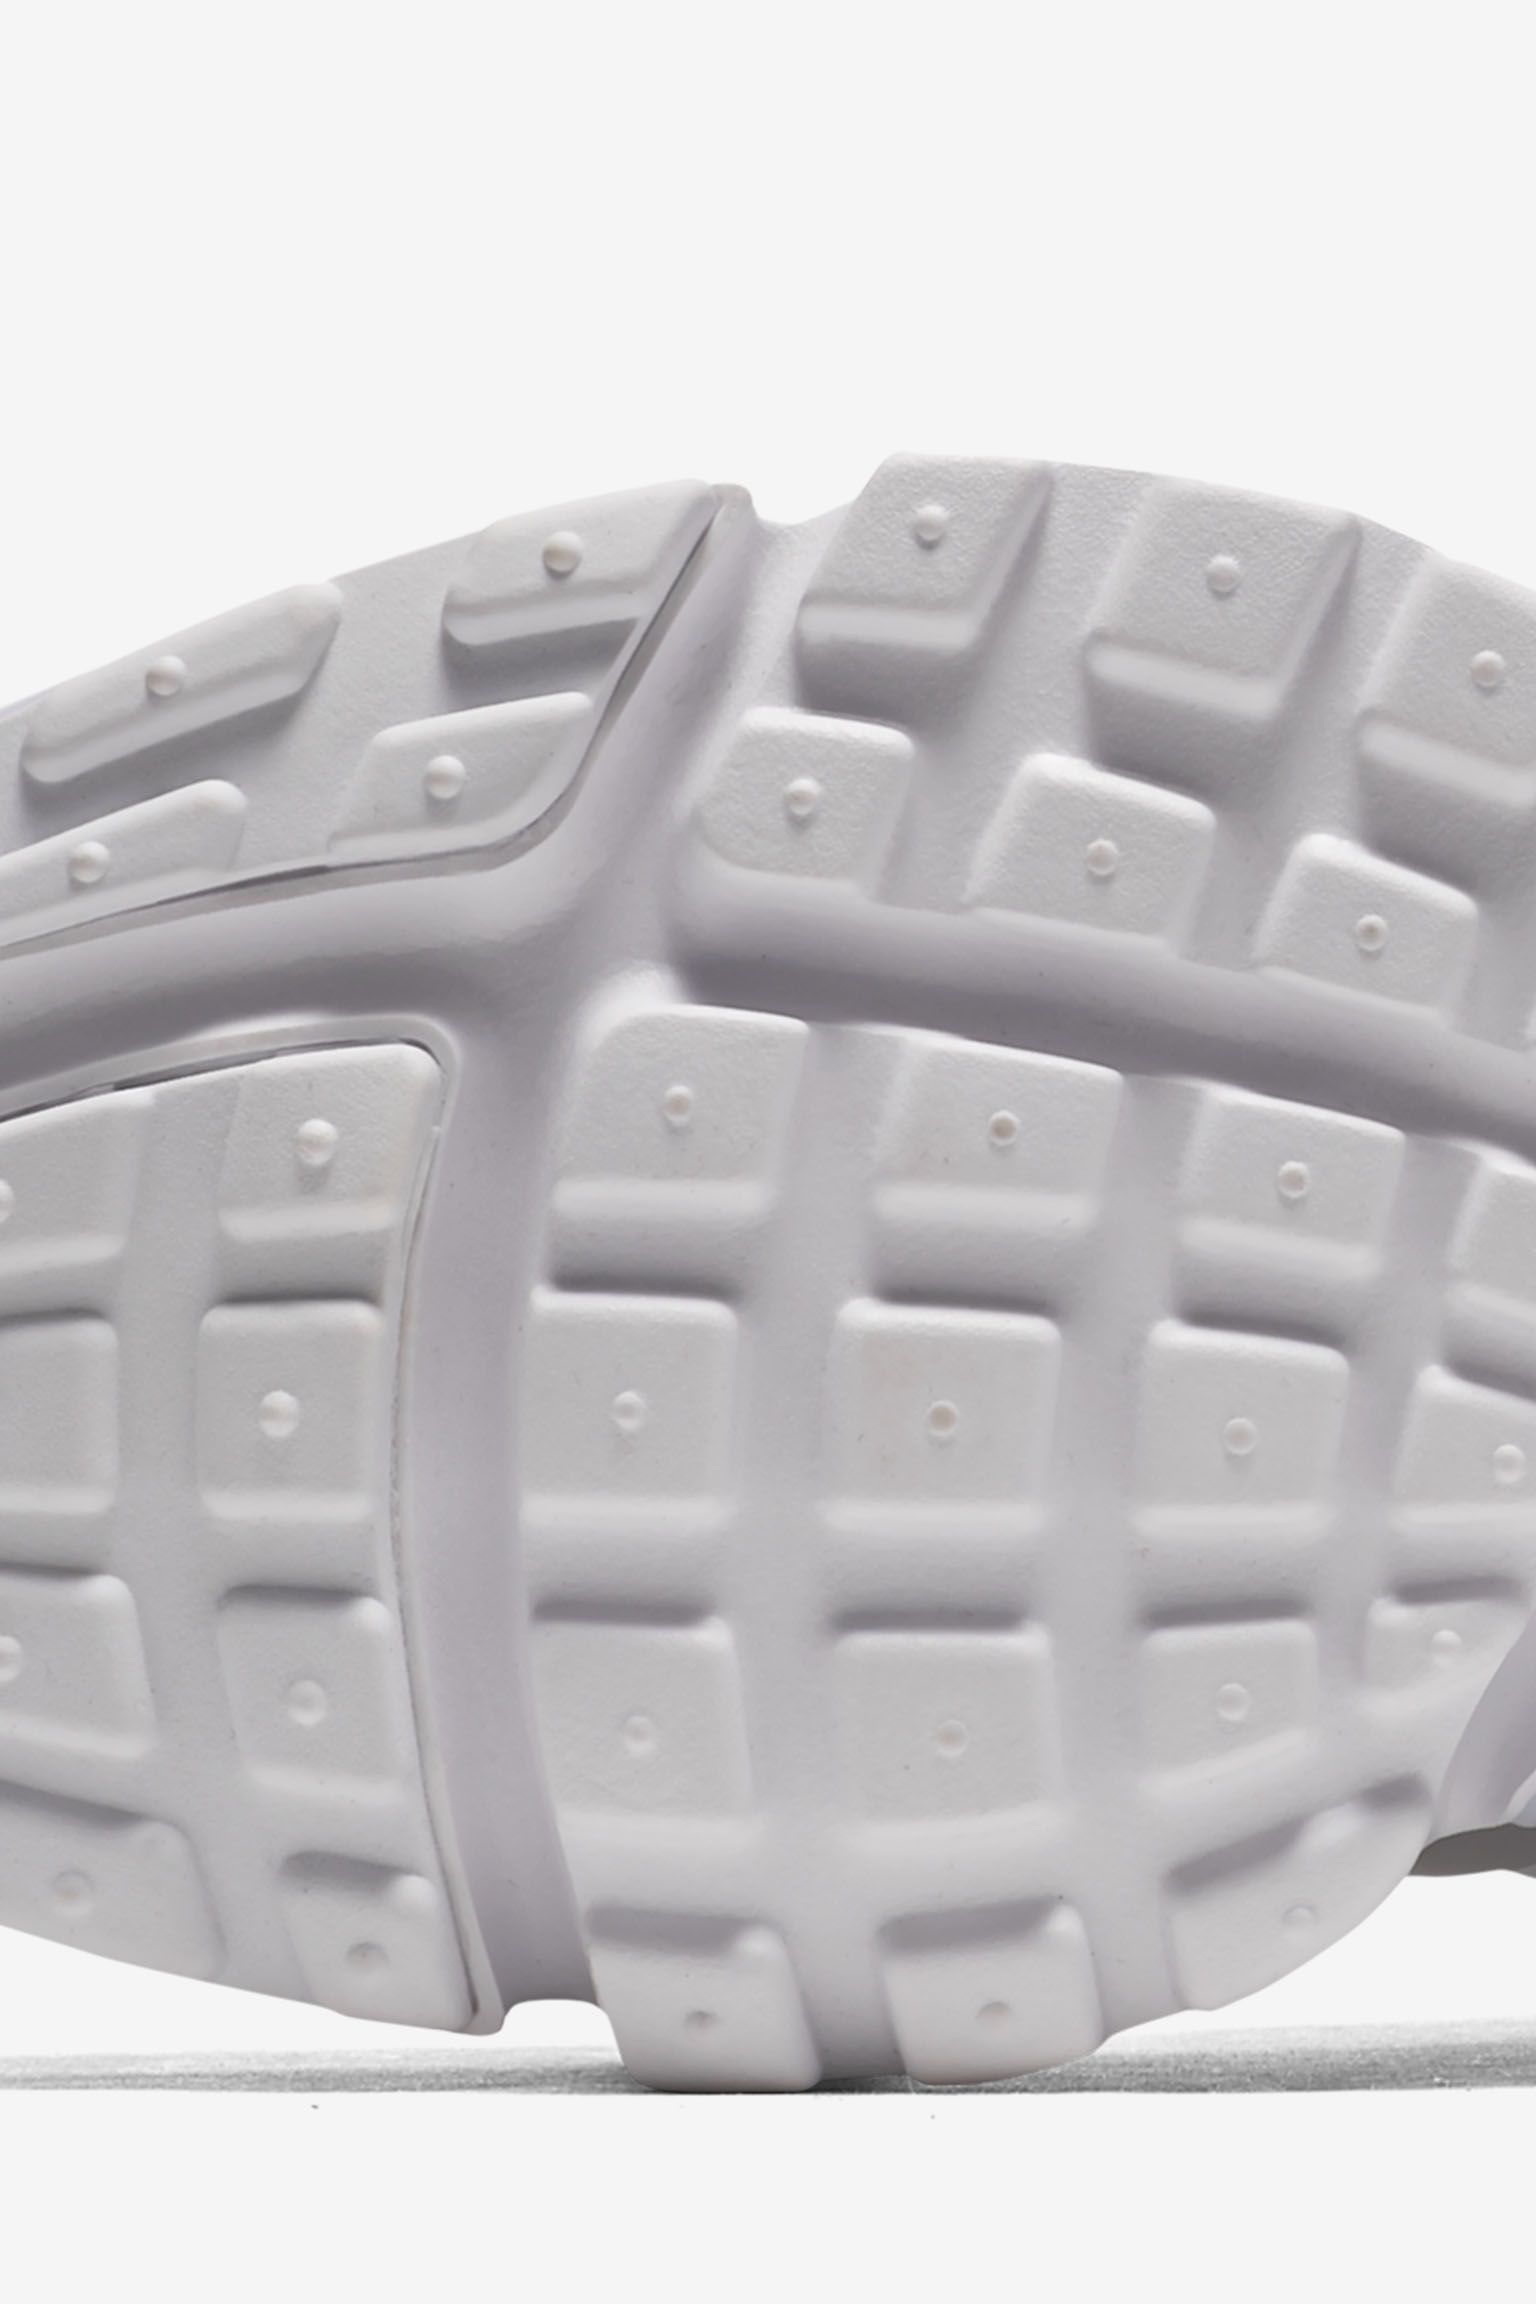 Nike Air Presto Ultra Flyknit 'Triple White' Release Date. Nike SNKRS